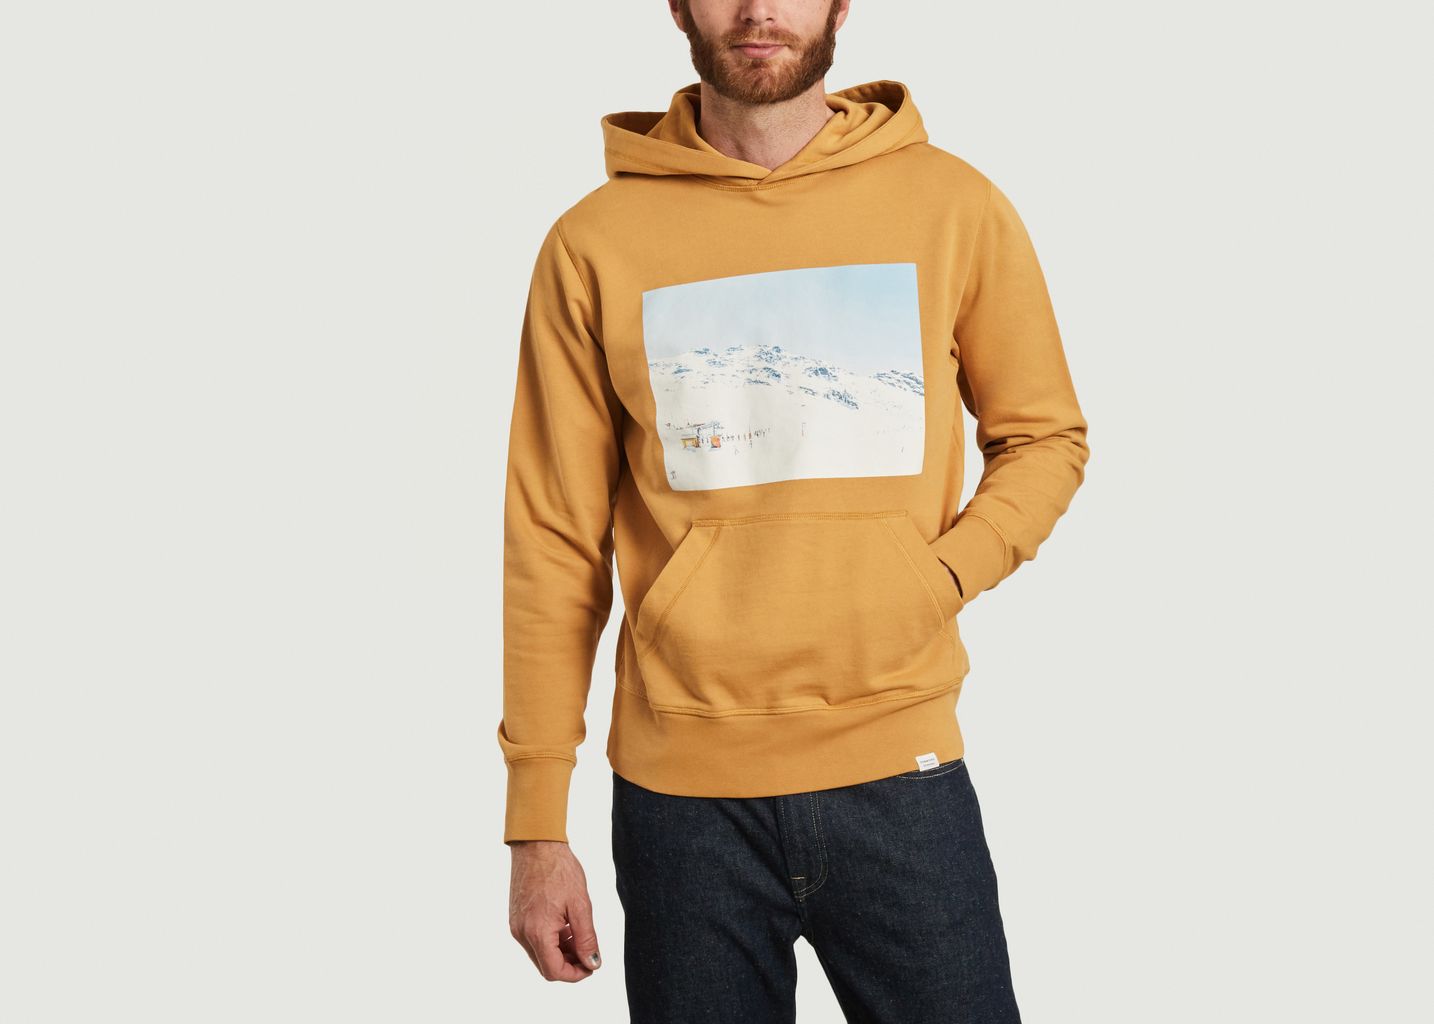 Moulet ski resort print hoodie - Edmmond Studios